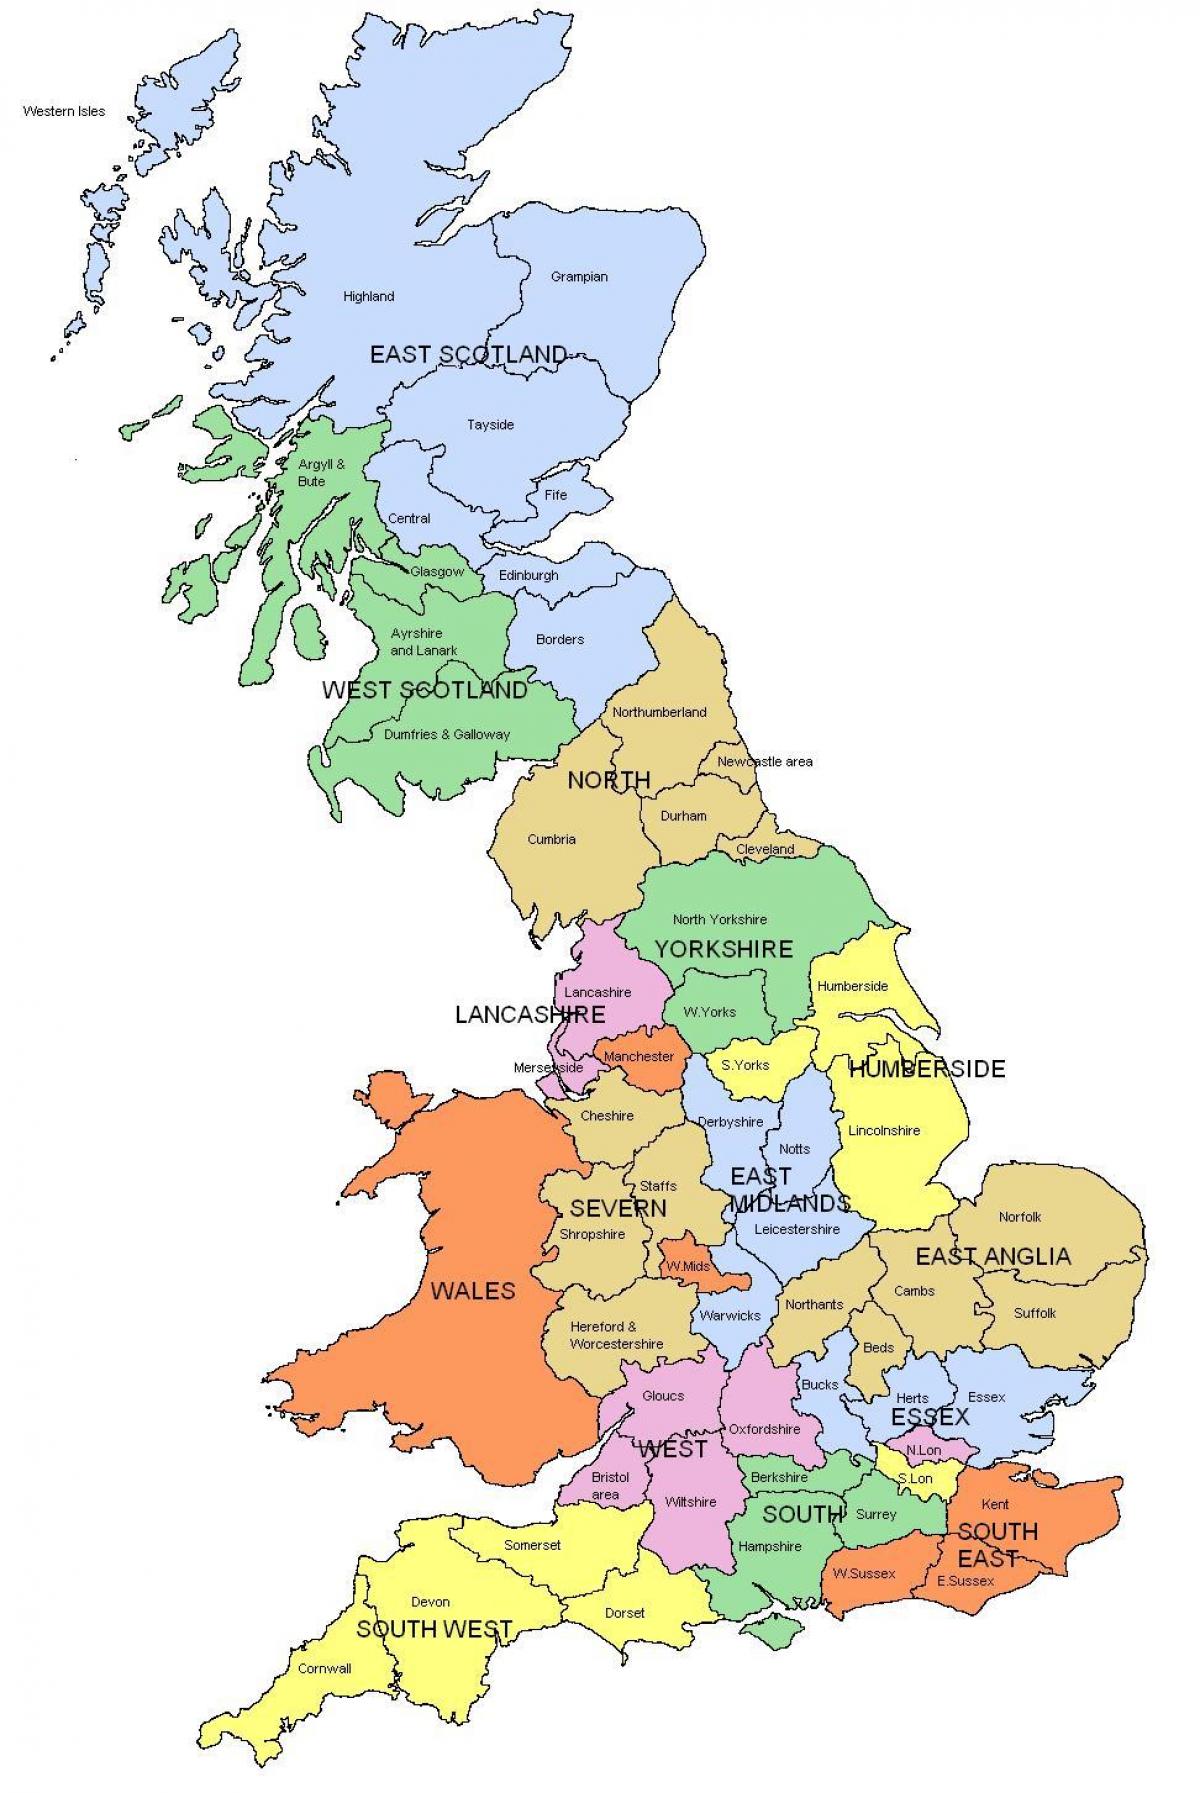 Royaume-Uni carte des régions